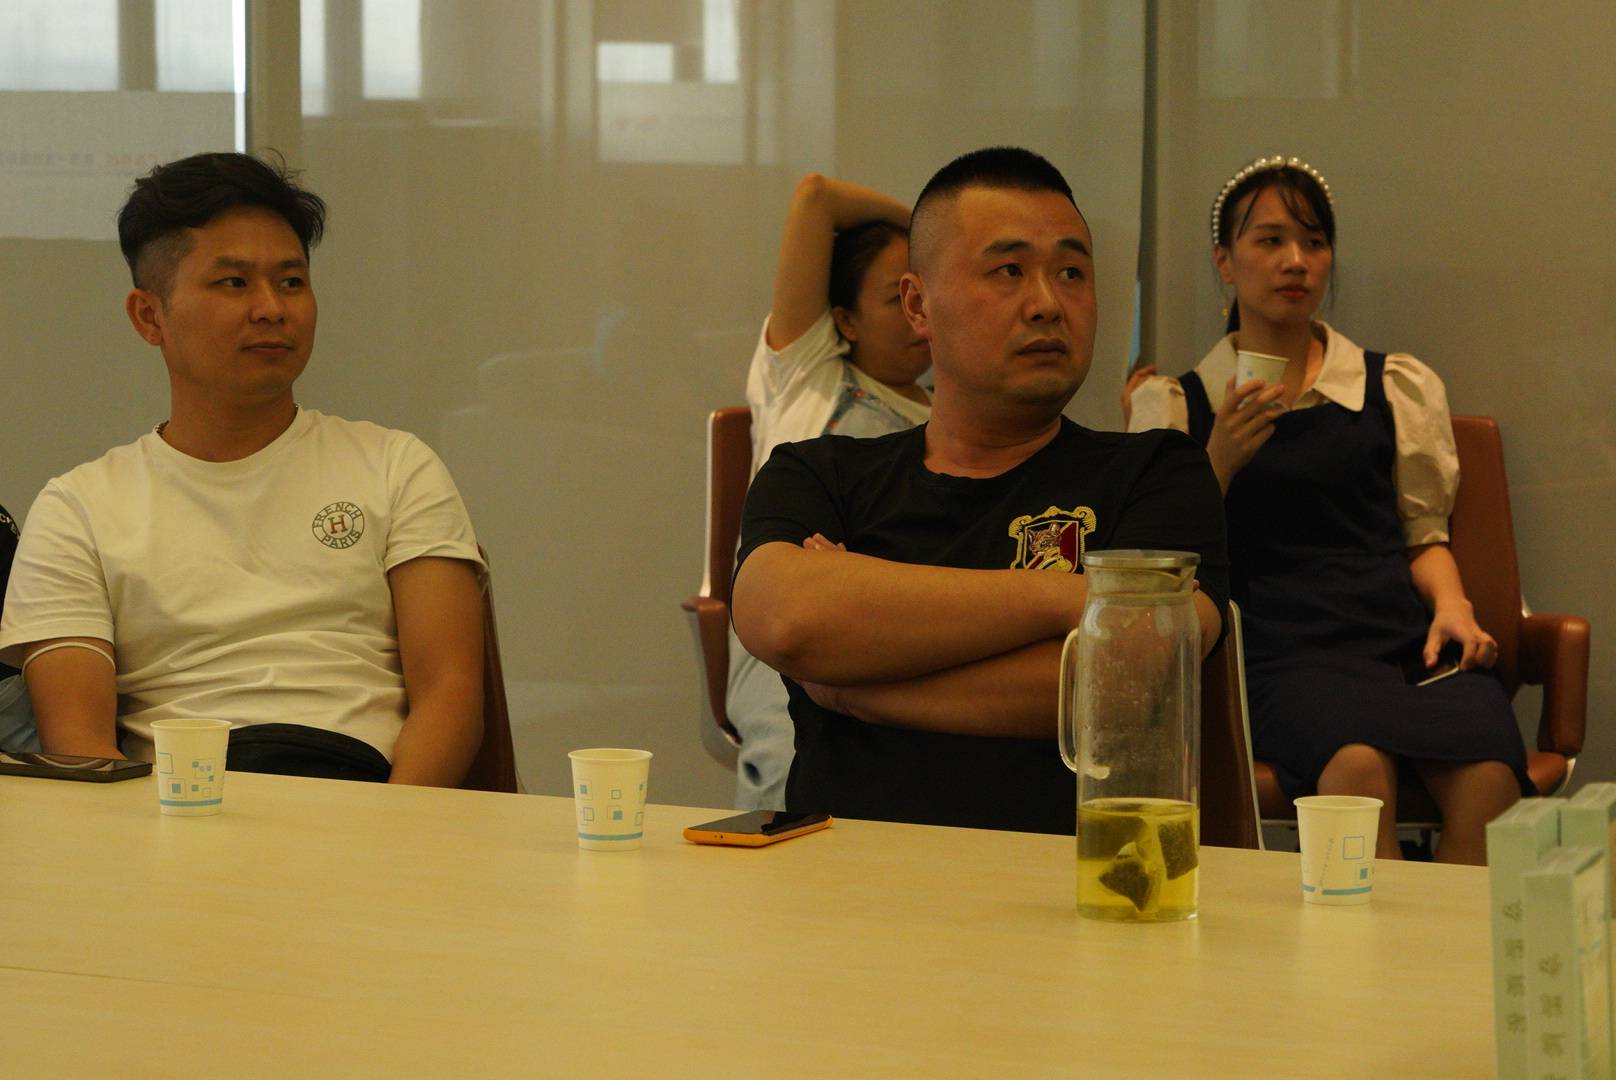 产康健康管理集团第I期“健康知识大讲堂” 于9月6日下午在广东医谷顺利举行 (图17)